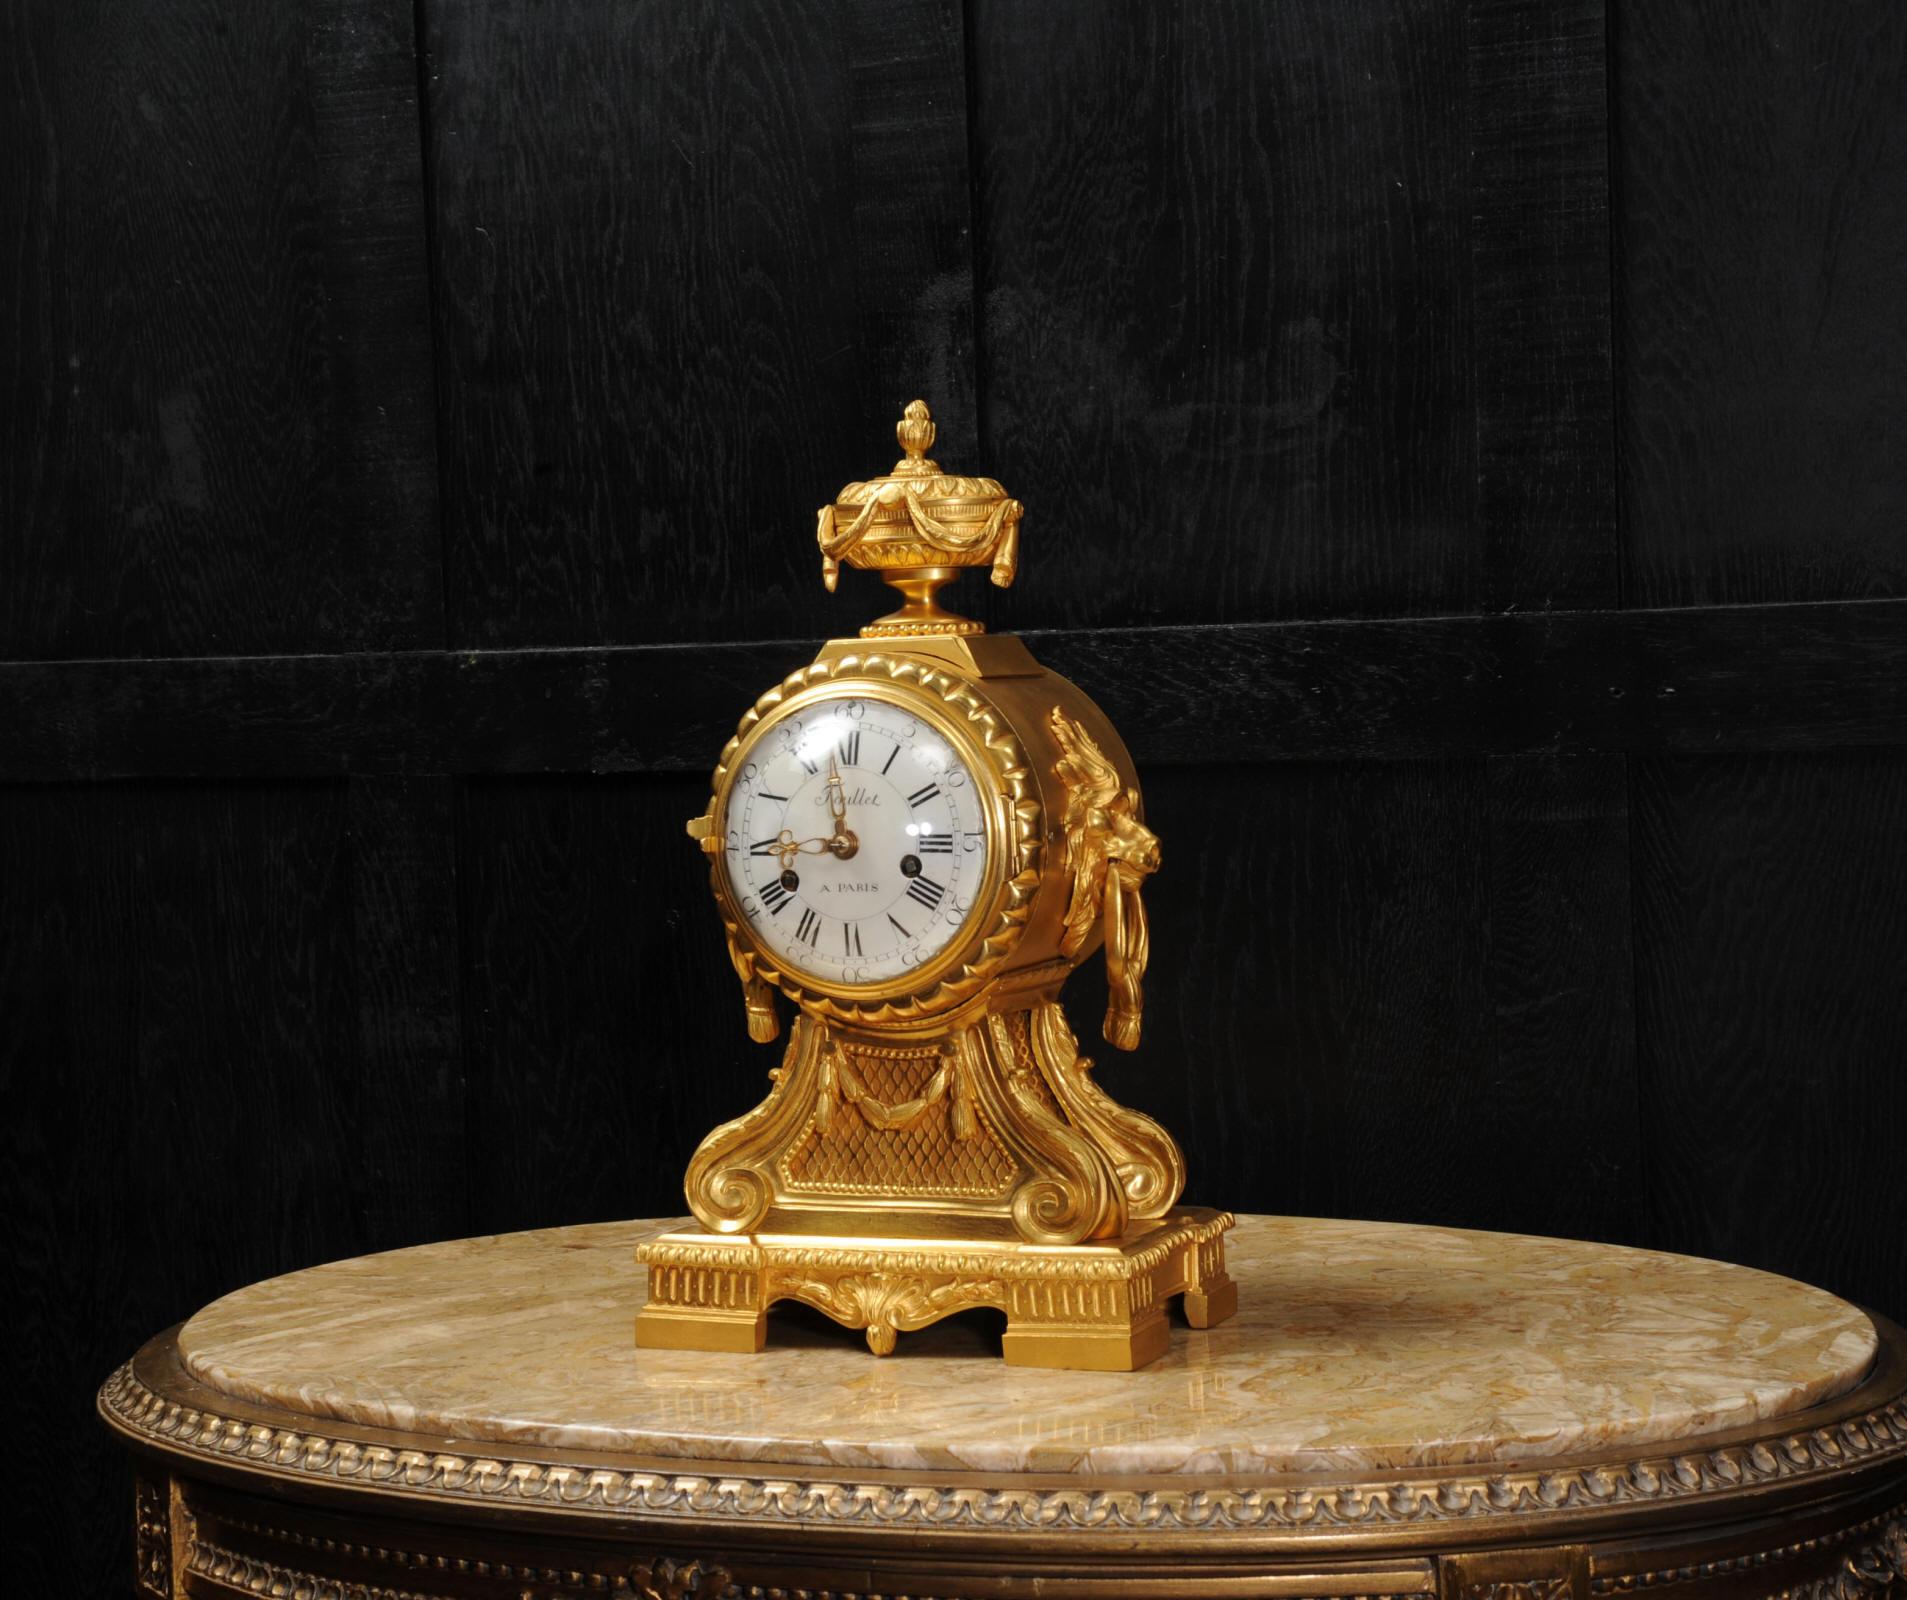 Antike französische Ormolu-Bronze-Trommelkopf-Uhr von Antoine Foullet, um 1770 (18. Jahrhundert und früher)